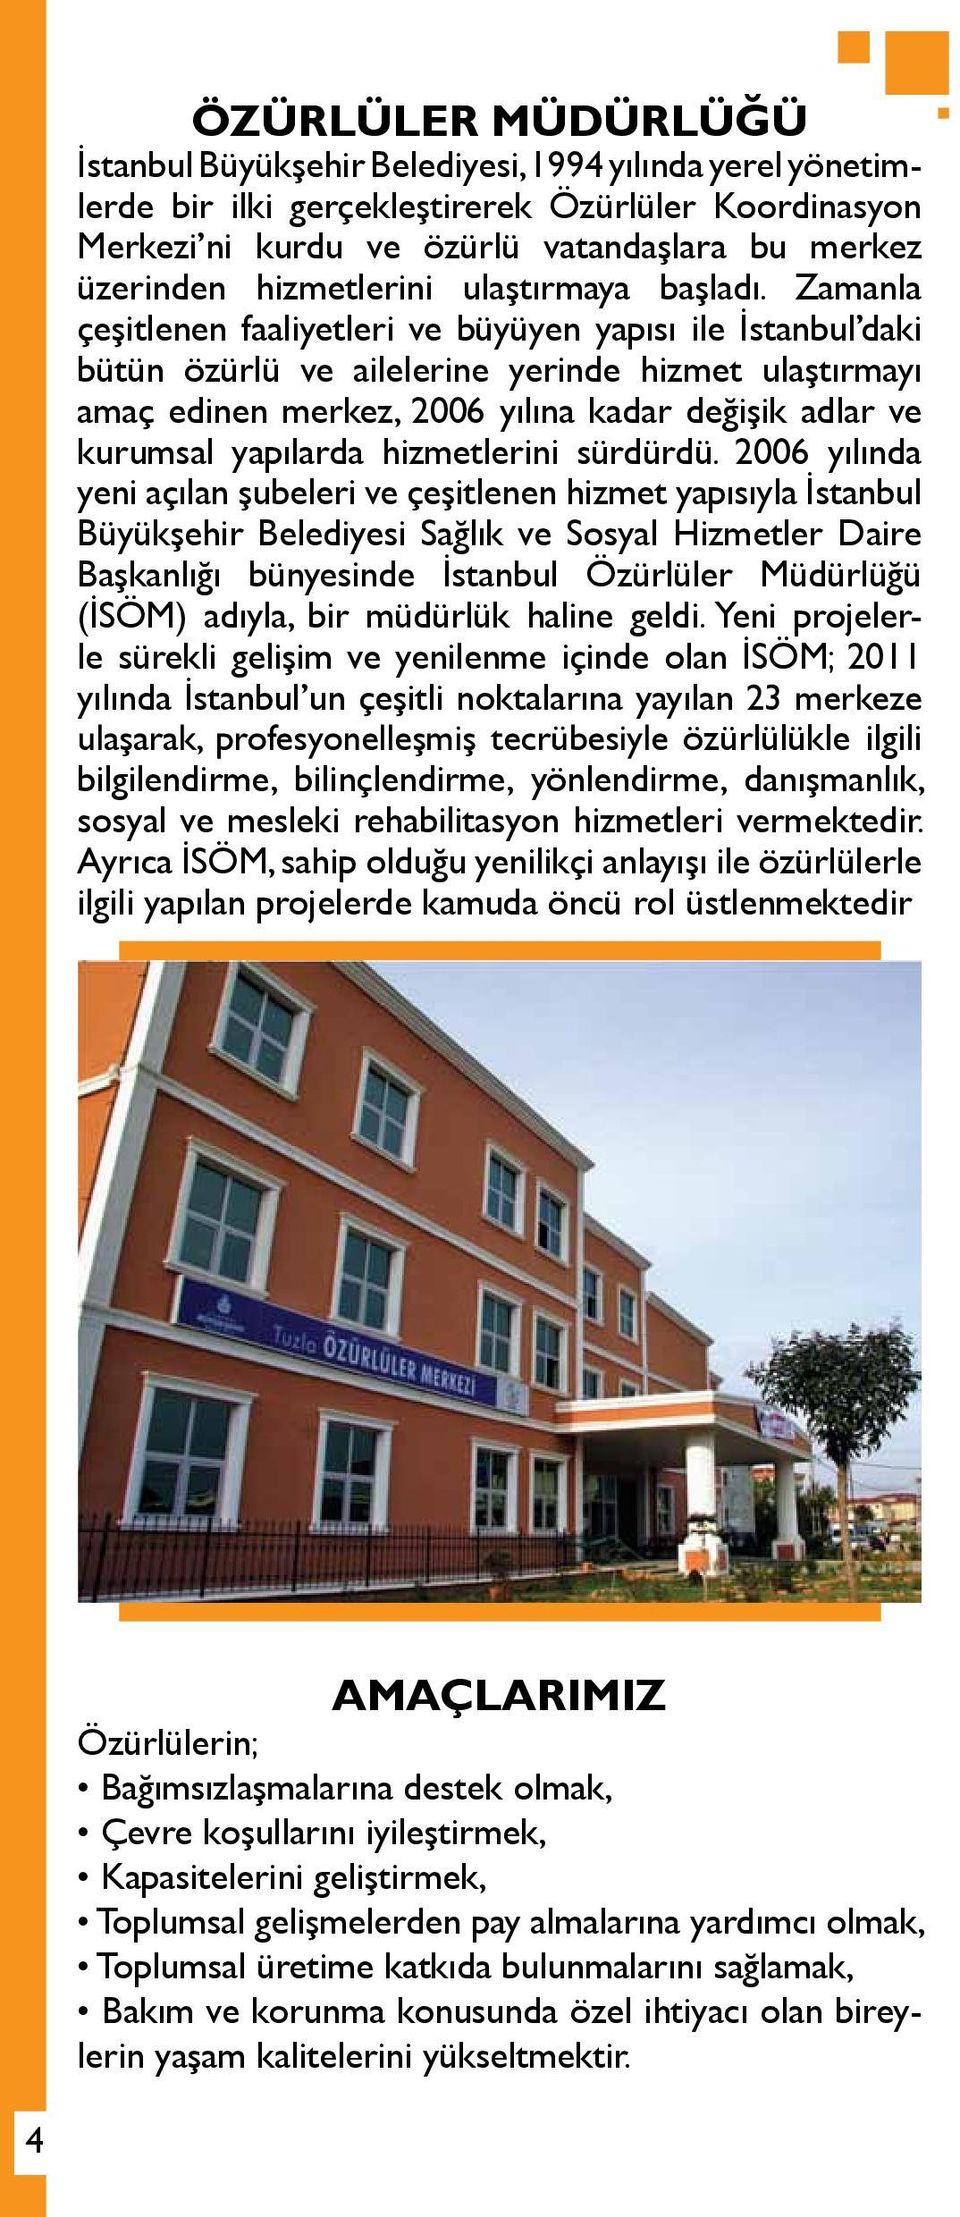 Zamanla çeşitlenen faaliyetleri ve büyüyen yapısı ile İstanbul daki bütün özürlü ve ailelerine yerinde hizmet ulaştırmayı amaç edinen merkez, 2006 yılına kadar değişik adlar ve kurumsal yapılarda